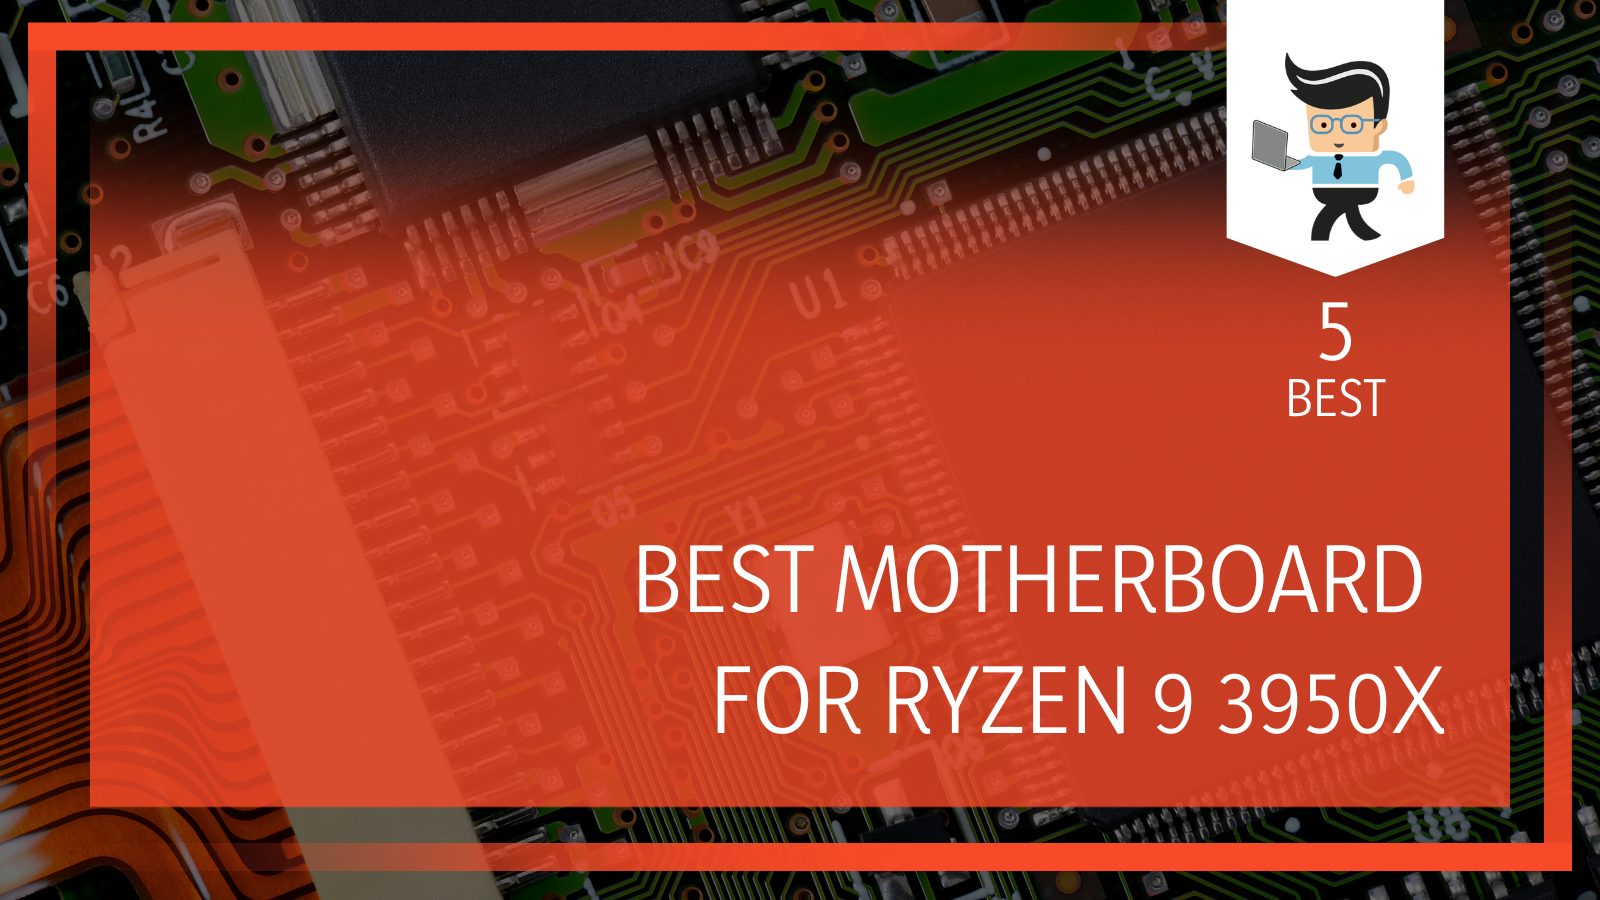 Ryzen x compatible motherboards